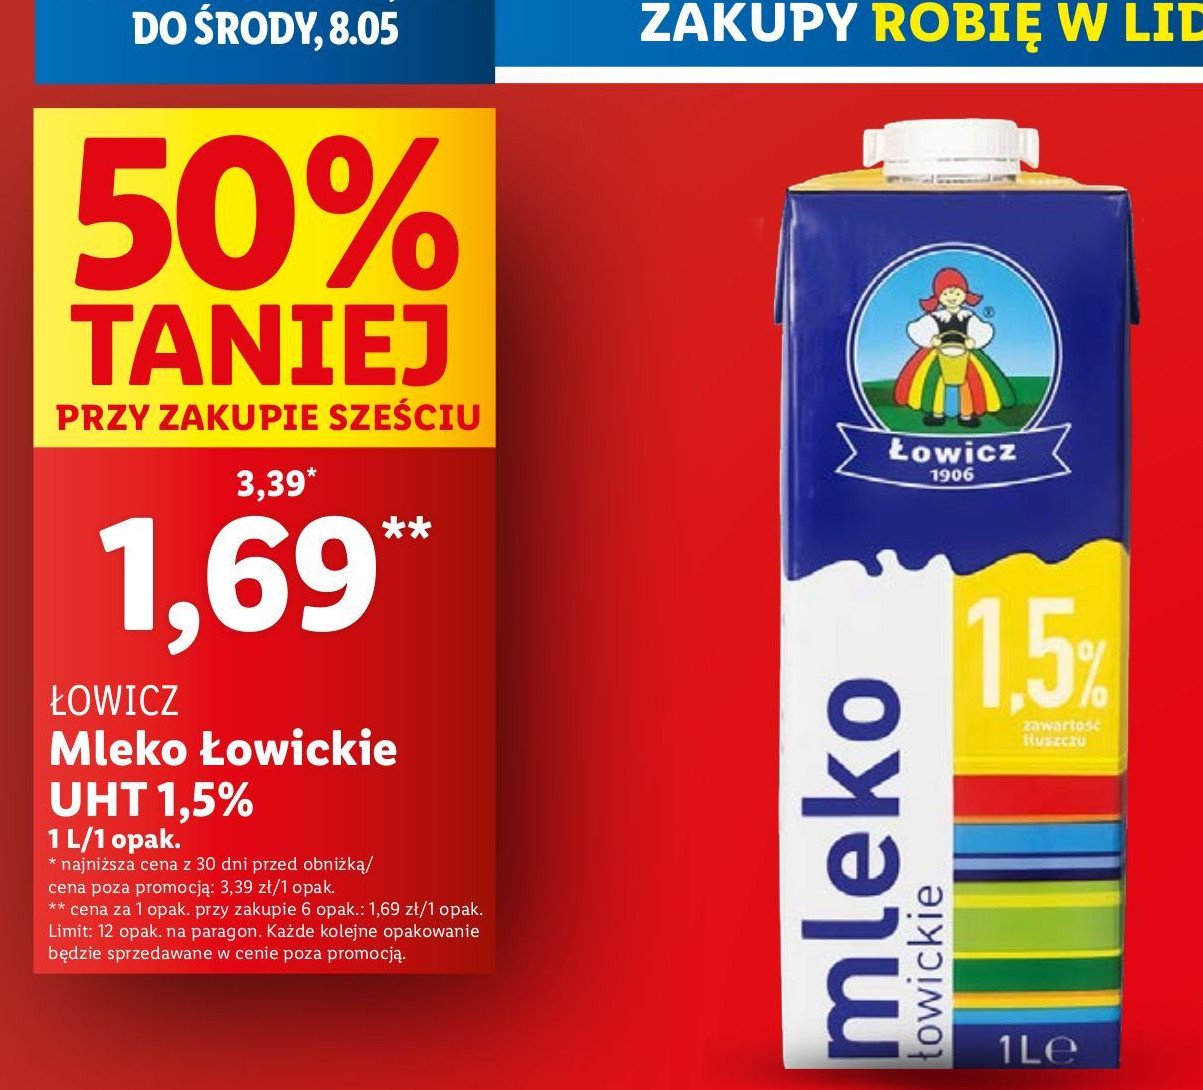 Mleko 1.5 % Łowicz 1906 łowickie promocja